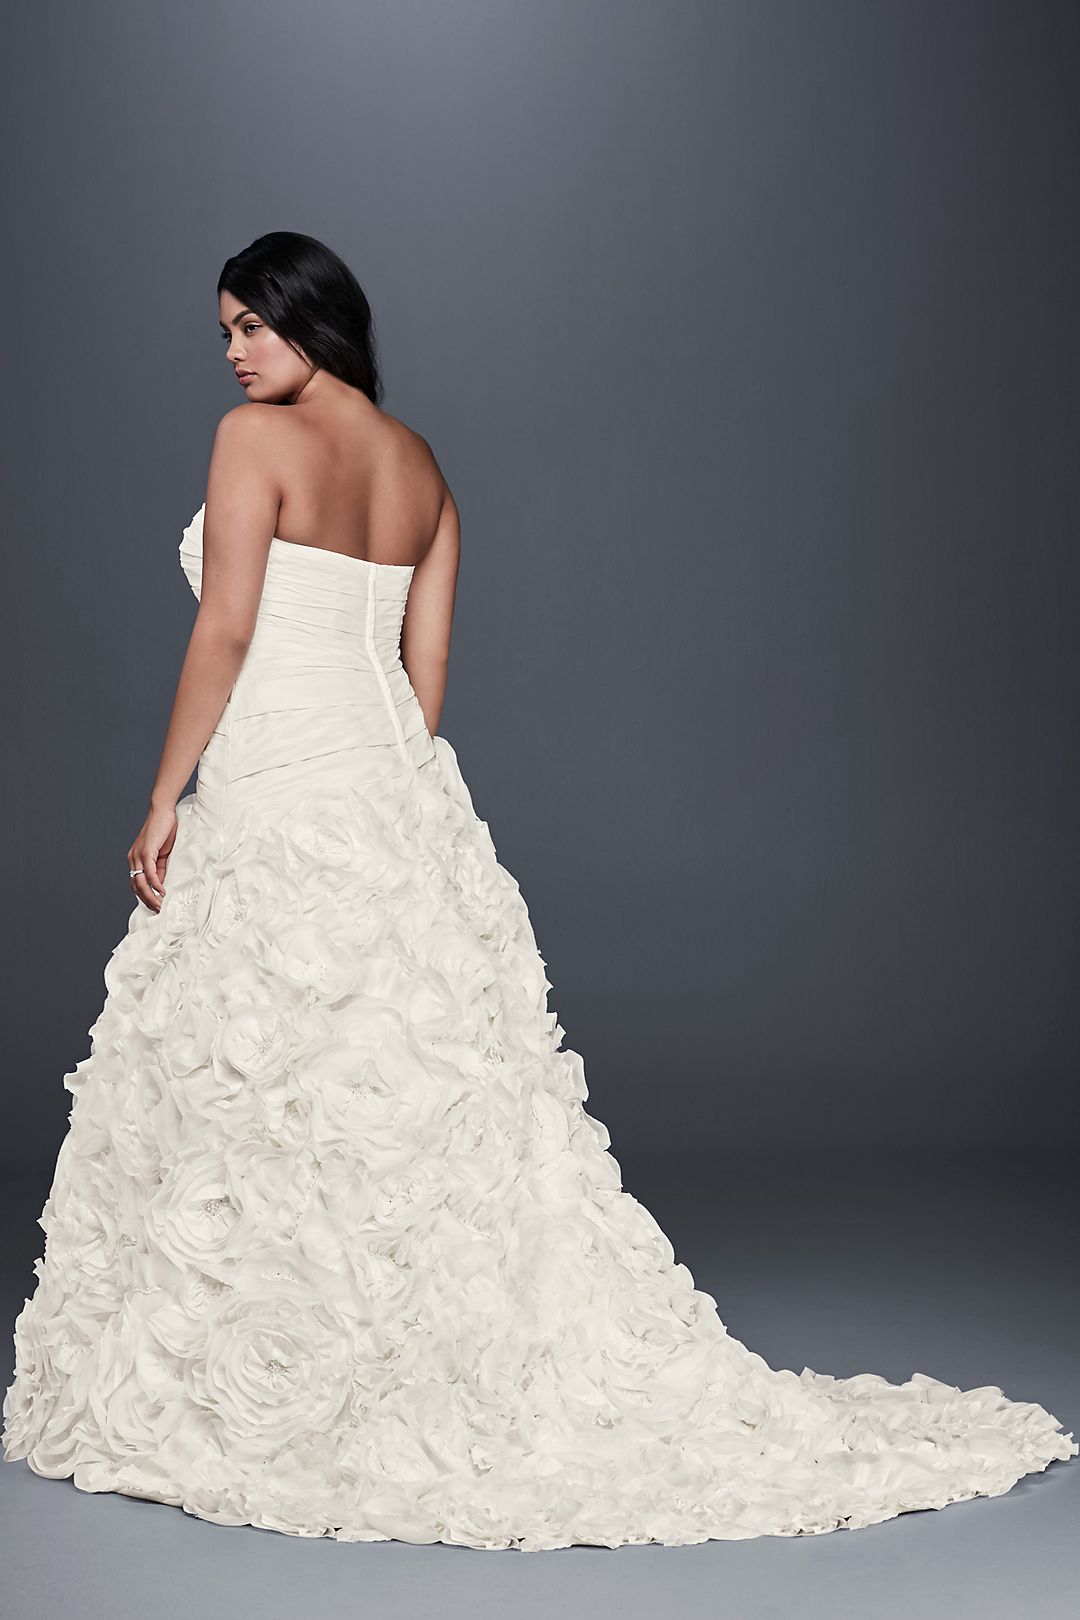 Rosette Skirt Wedding Dress Image 2